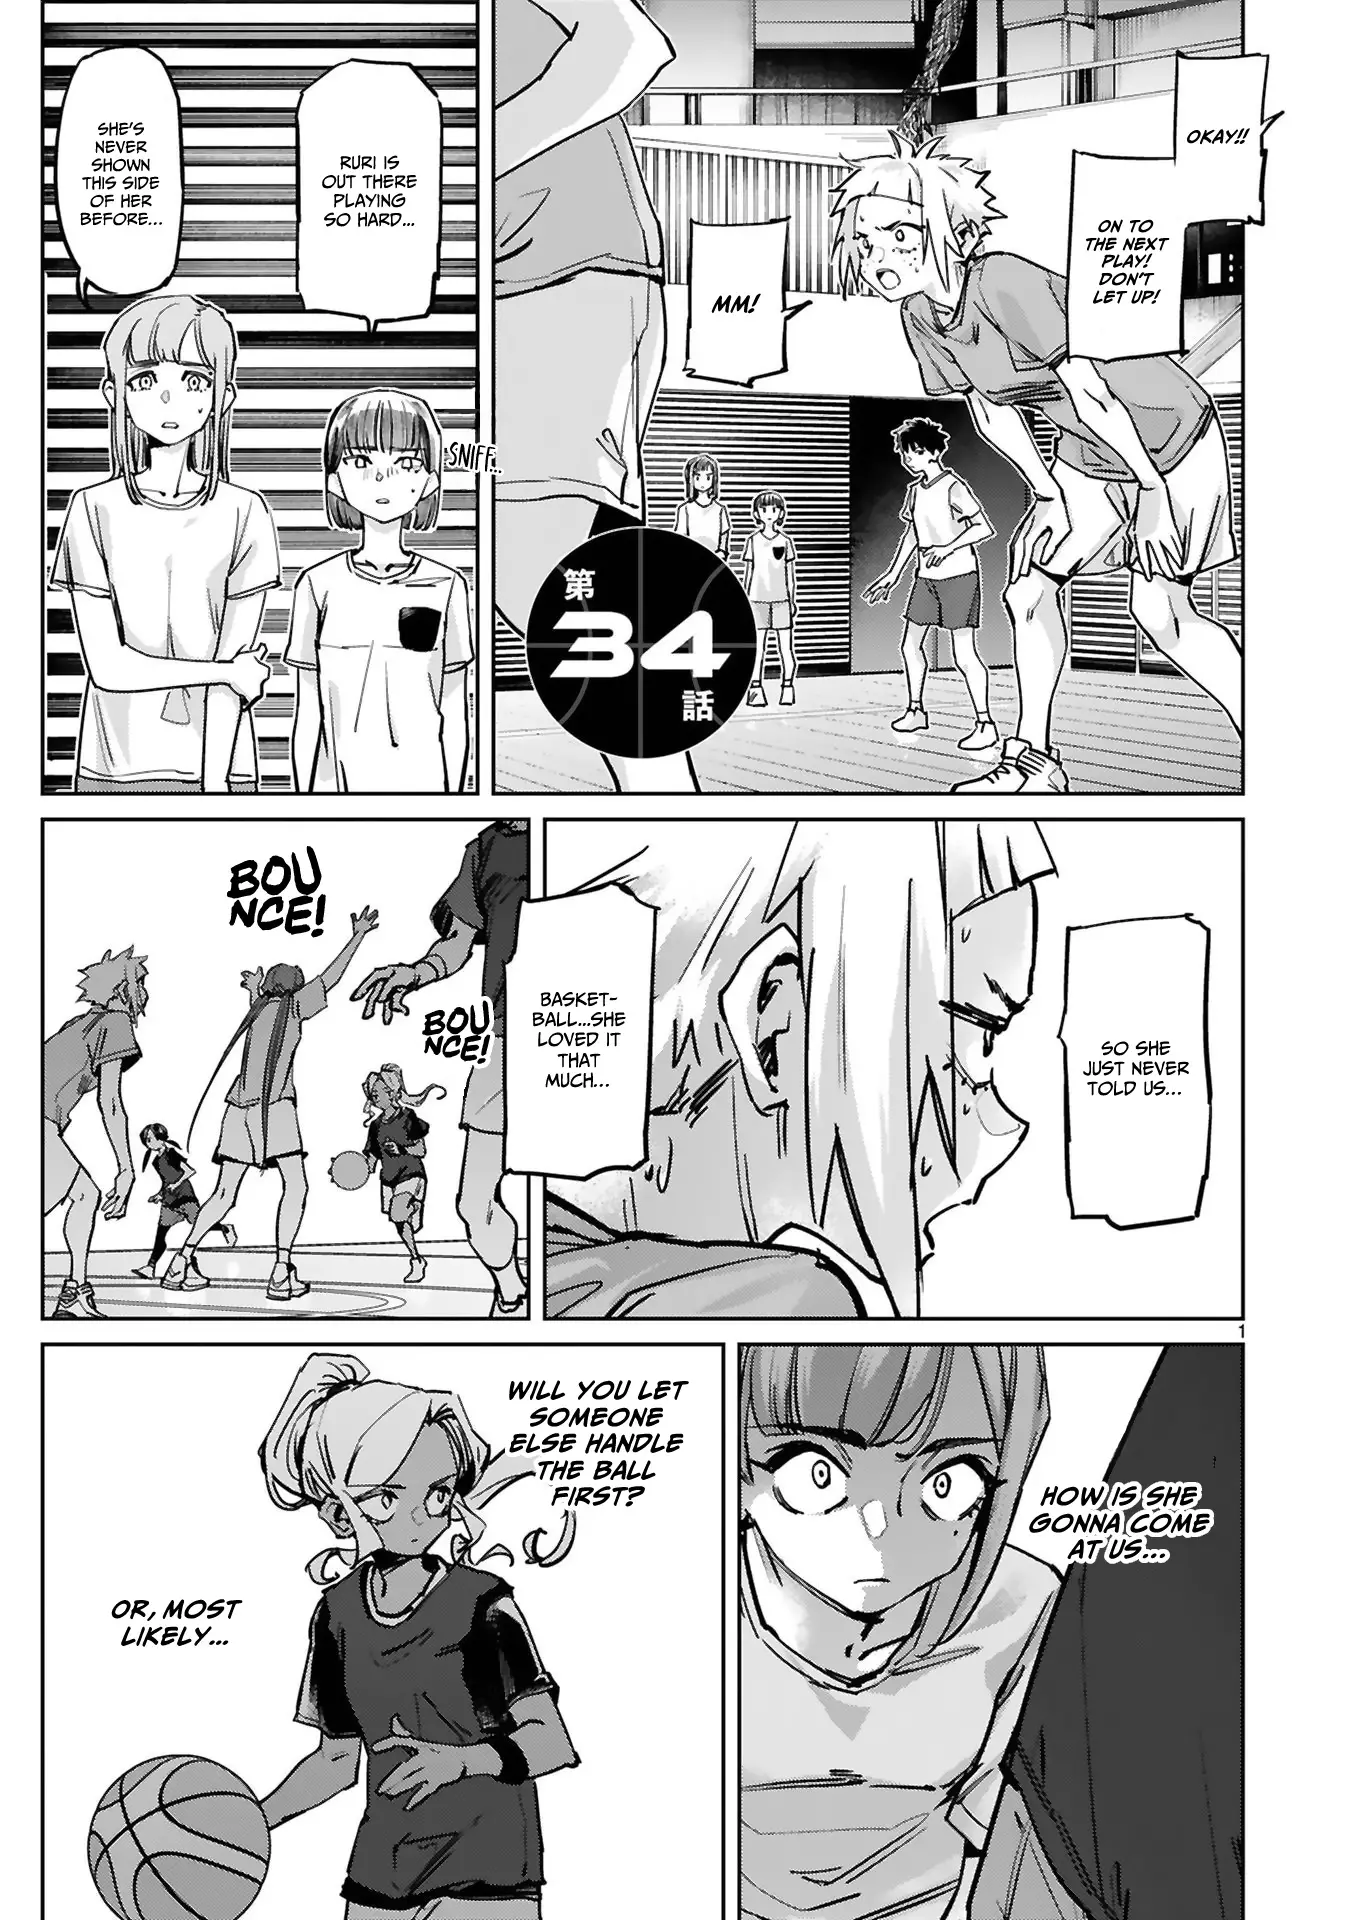 Tsubame Tip Off! - 34 page 2-55f46523